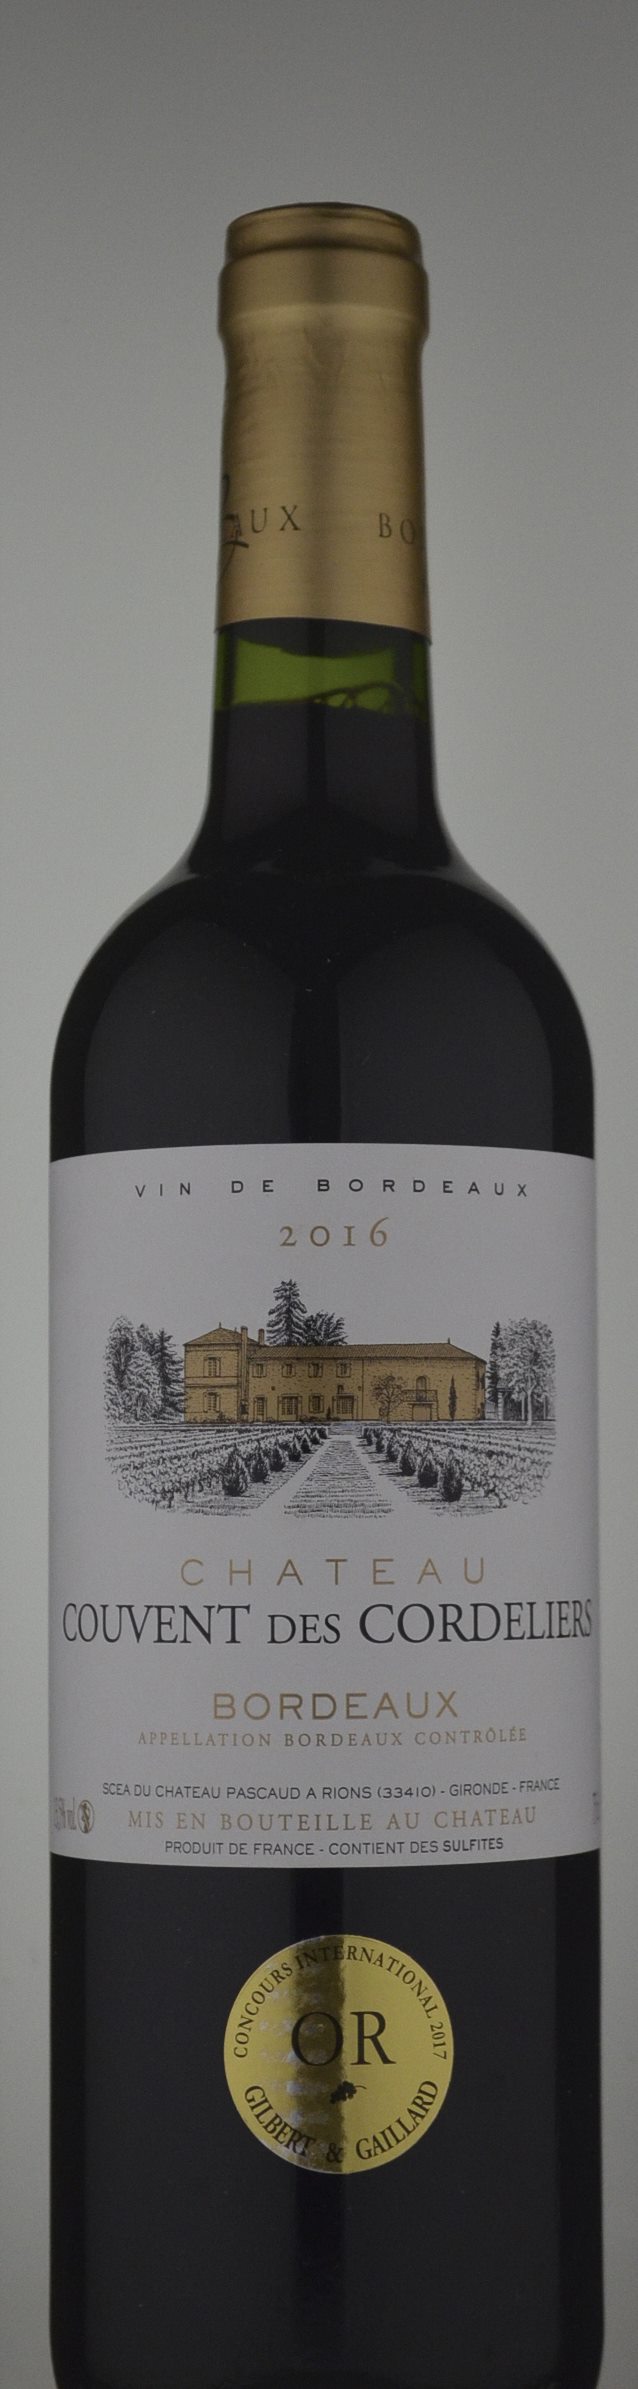 Chateau Couvent des Cordeliers Bordeaux Blend Red 2016